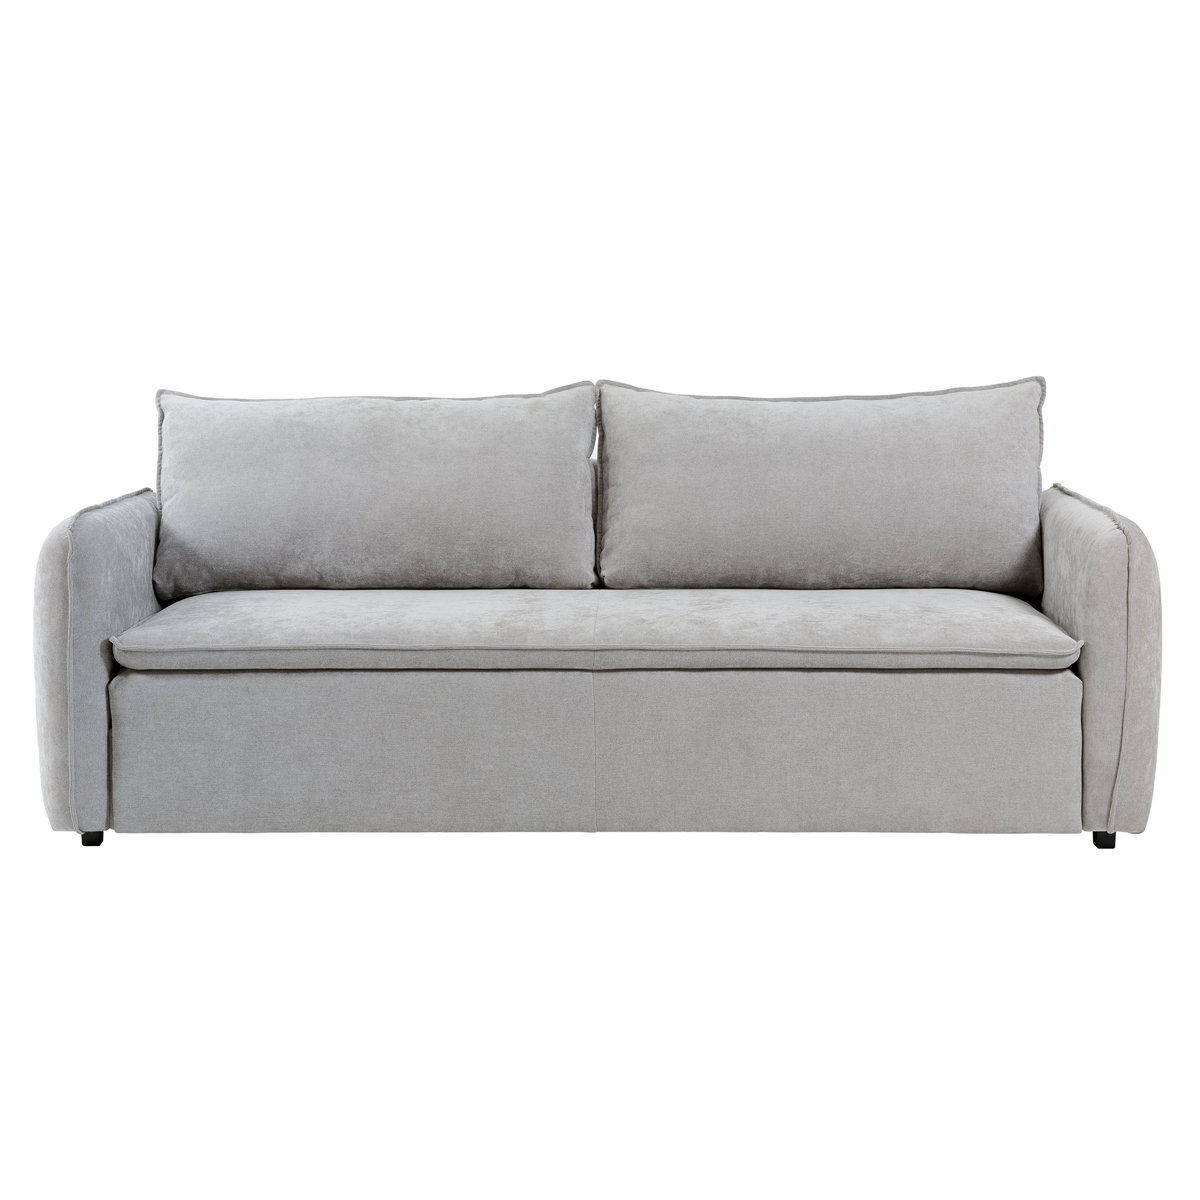 Ander sofá cama gris